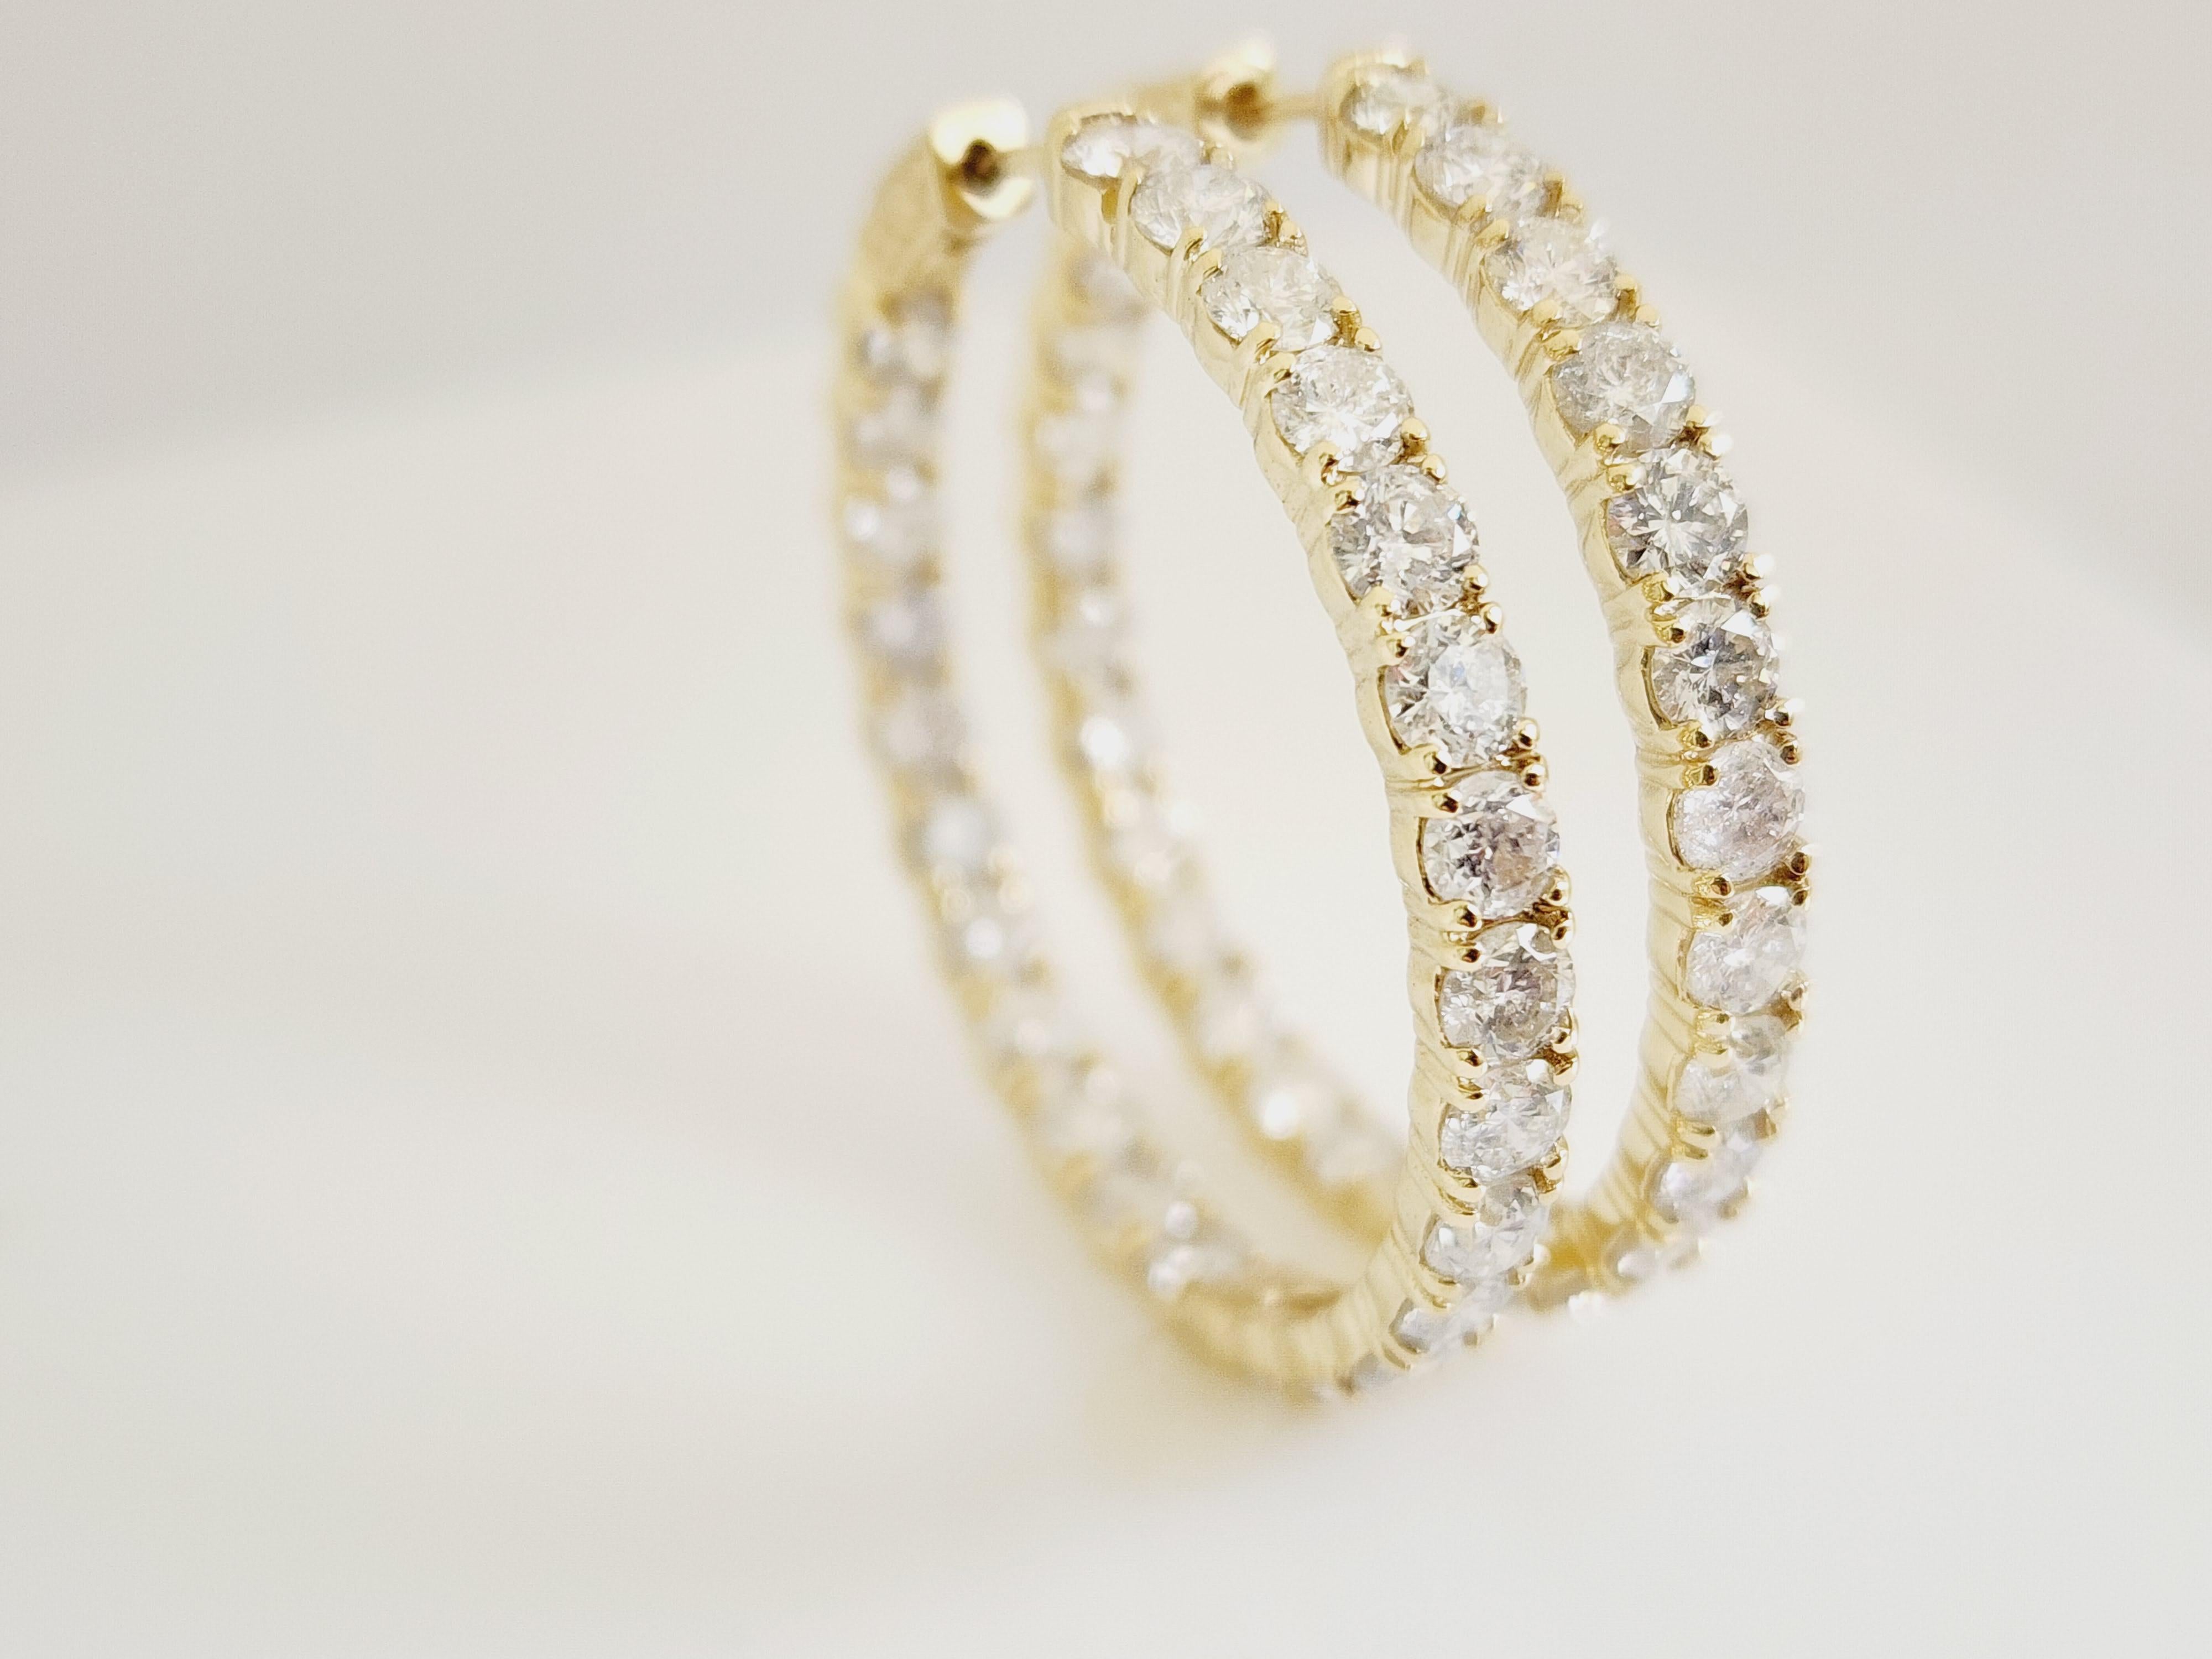 10.1 Carat Diamond Hoops Earrings 14 Karat Yellow Gold For Sale 3